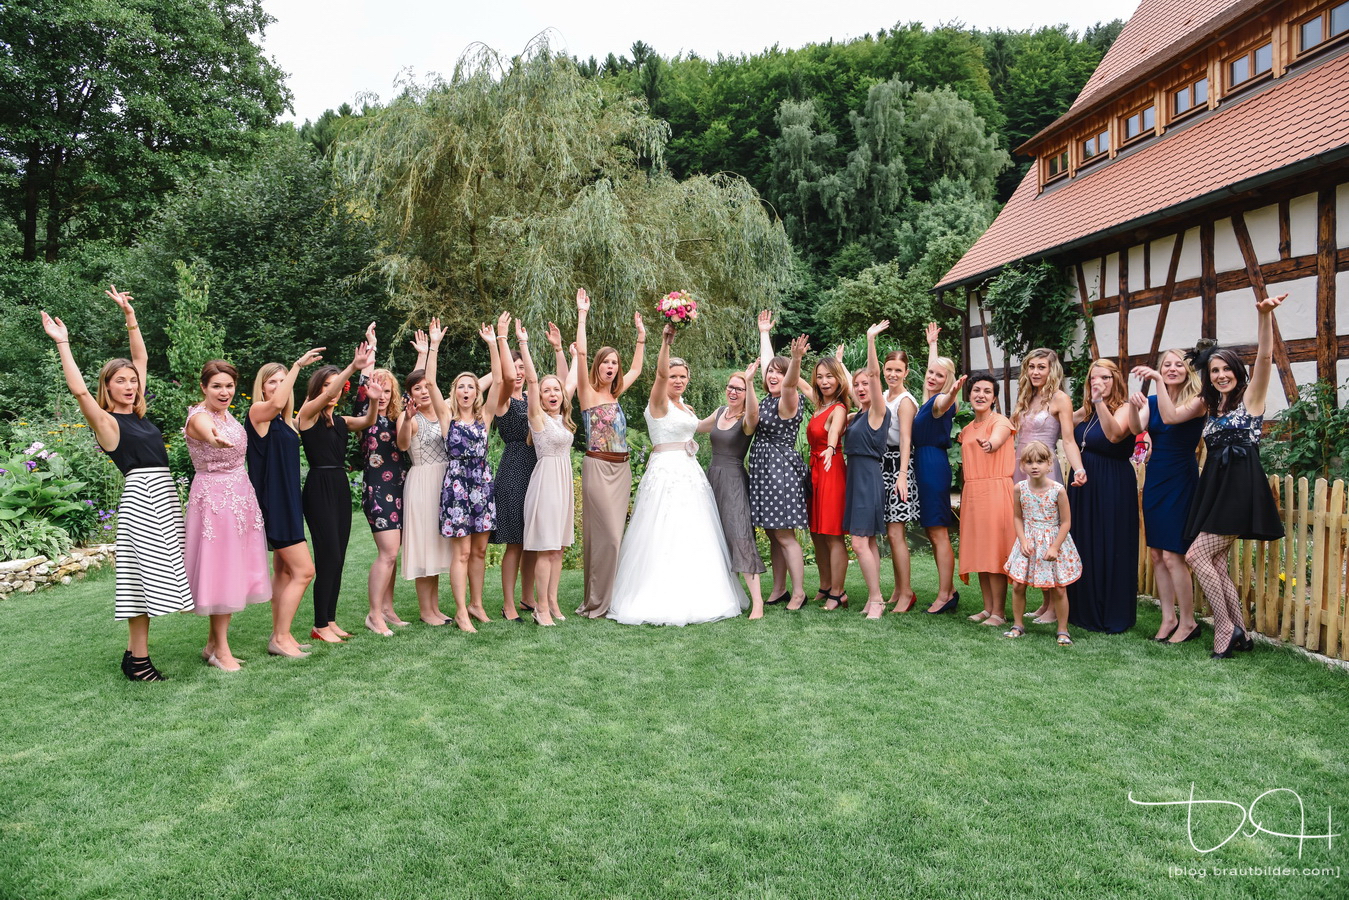 Spassige Gruppenbilder von der Hochzeitsgesellschaft macht der Hochzeitsfotograf.